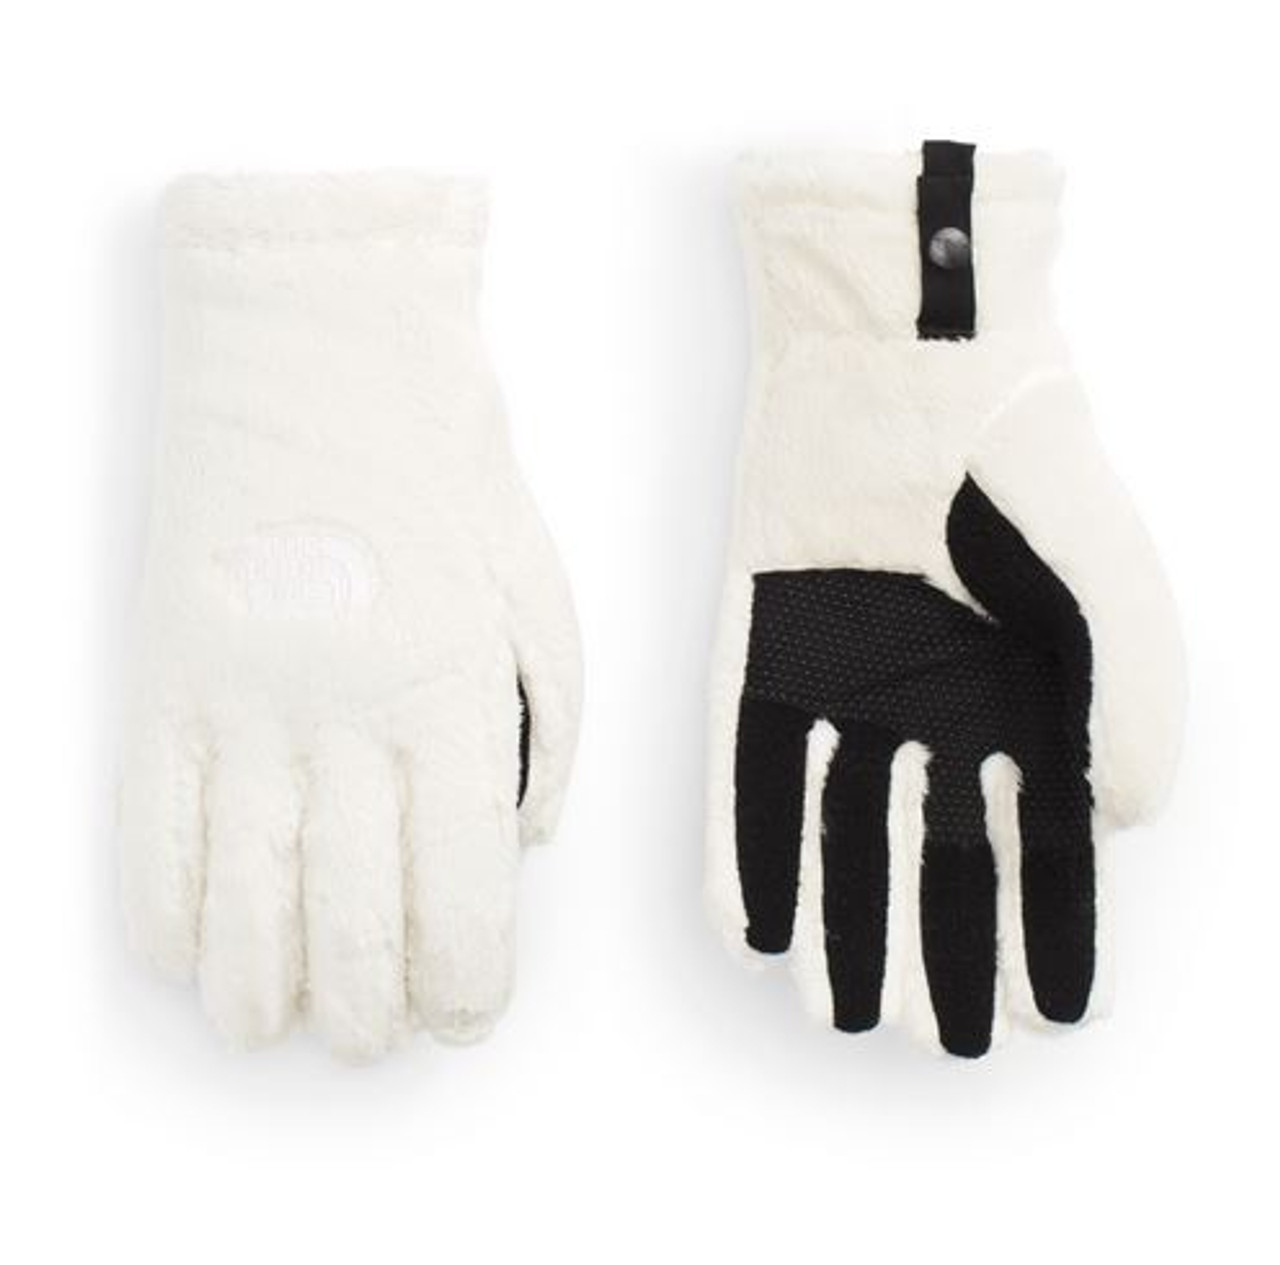 osito gloves